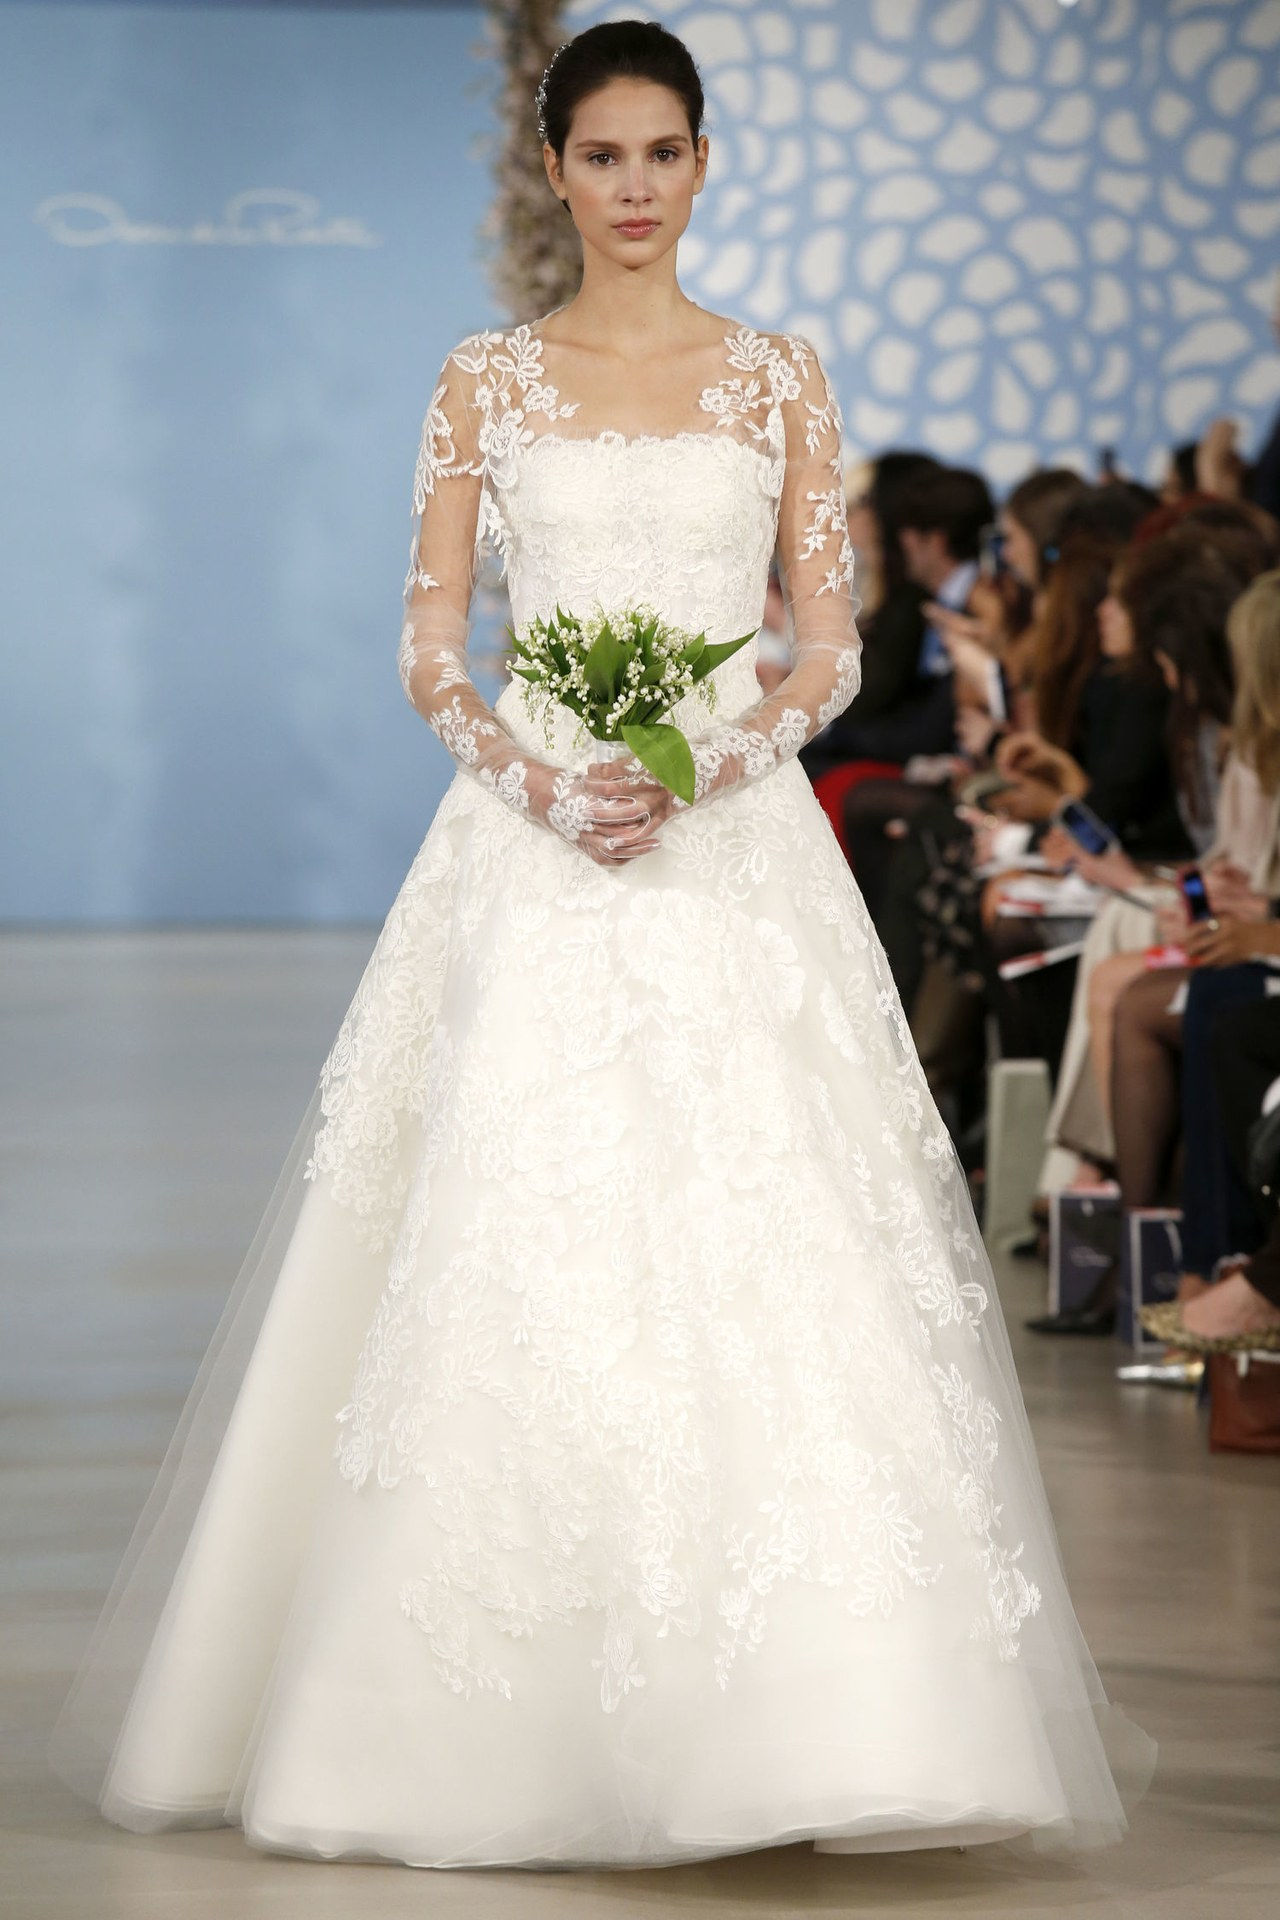 3 elizabeth taylor first wedding dresses inspired by wedding gowns conrad hilton celebrity weddings 0626